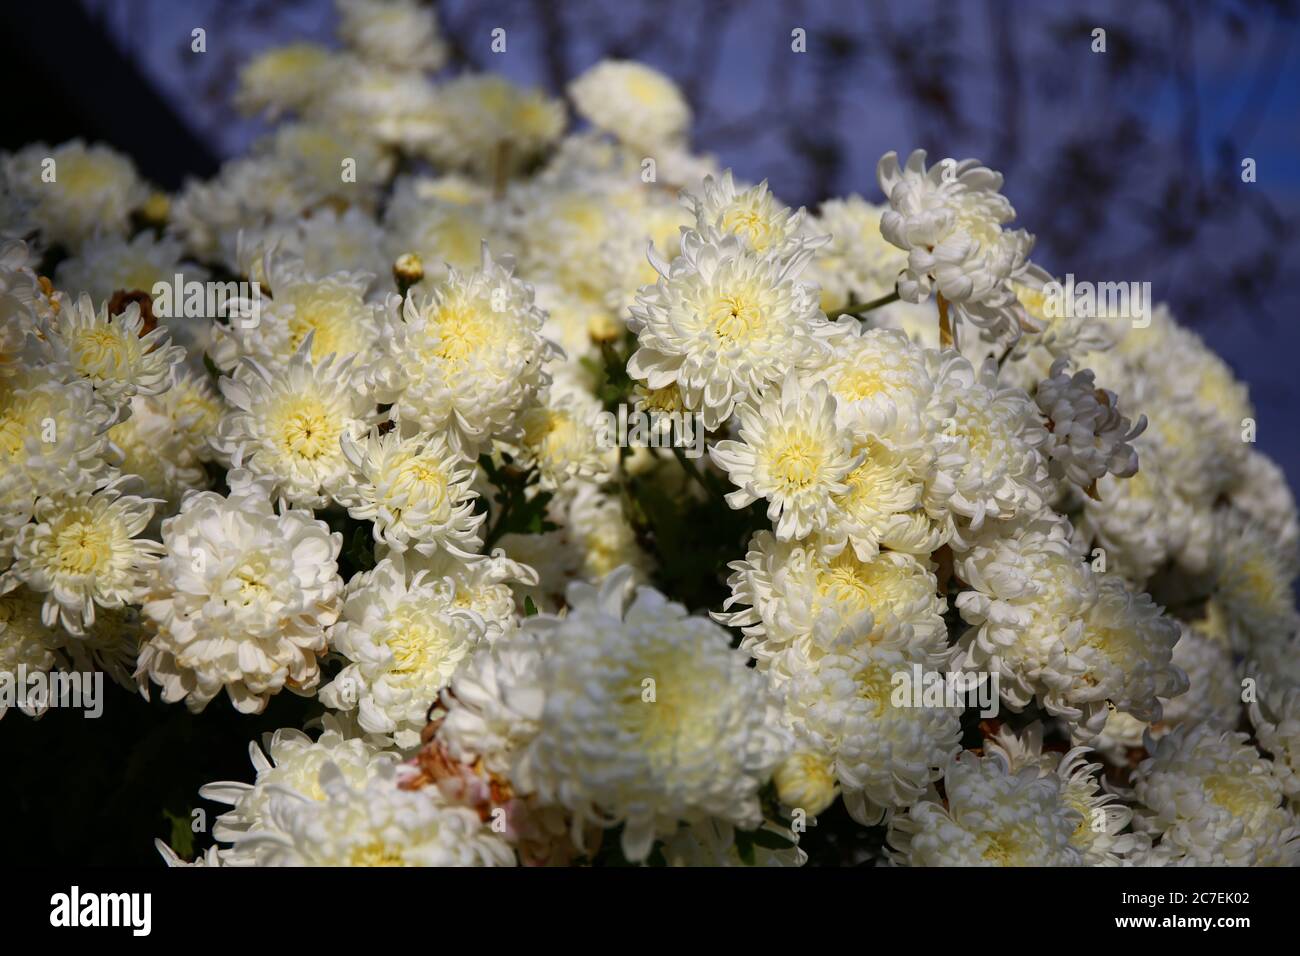 White chrysanthemum Stock Photo